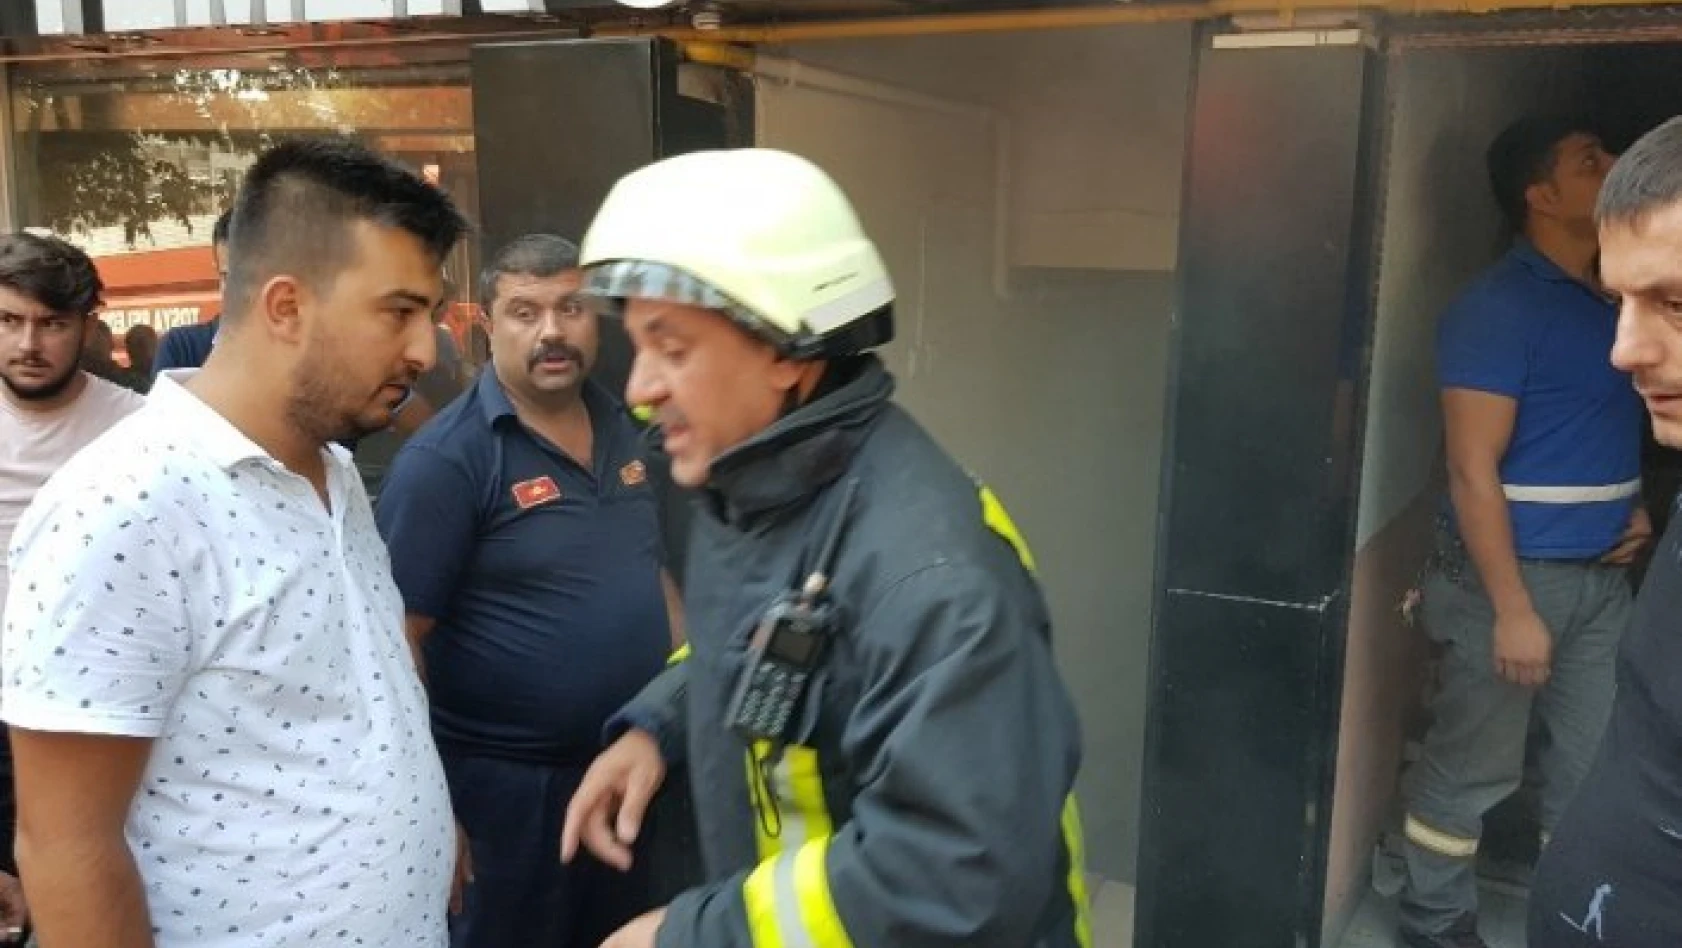 MHP Tosya İlçe Binasında bayramlaşma sırasında yangın çıktı